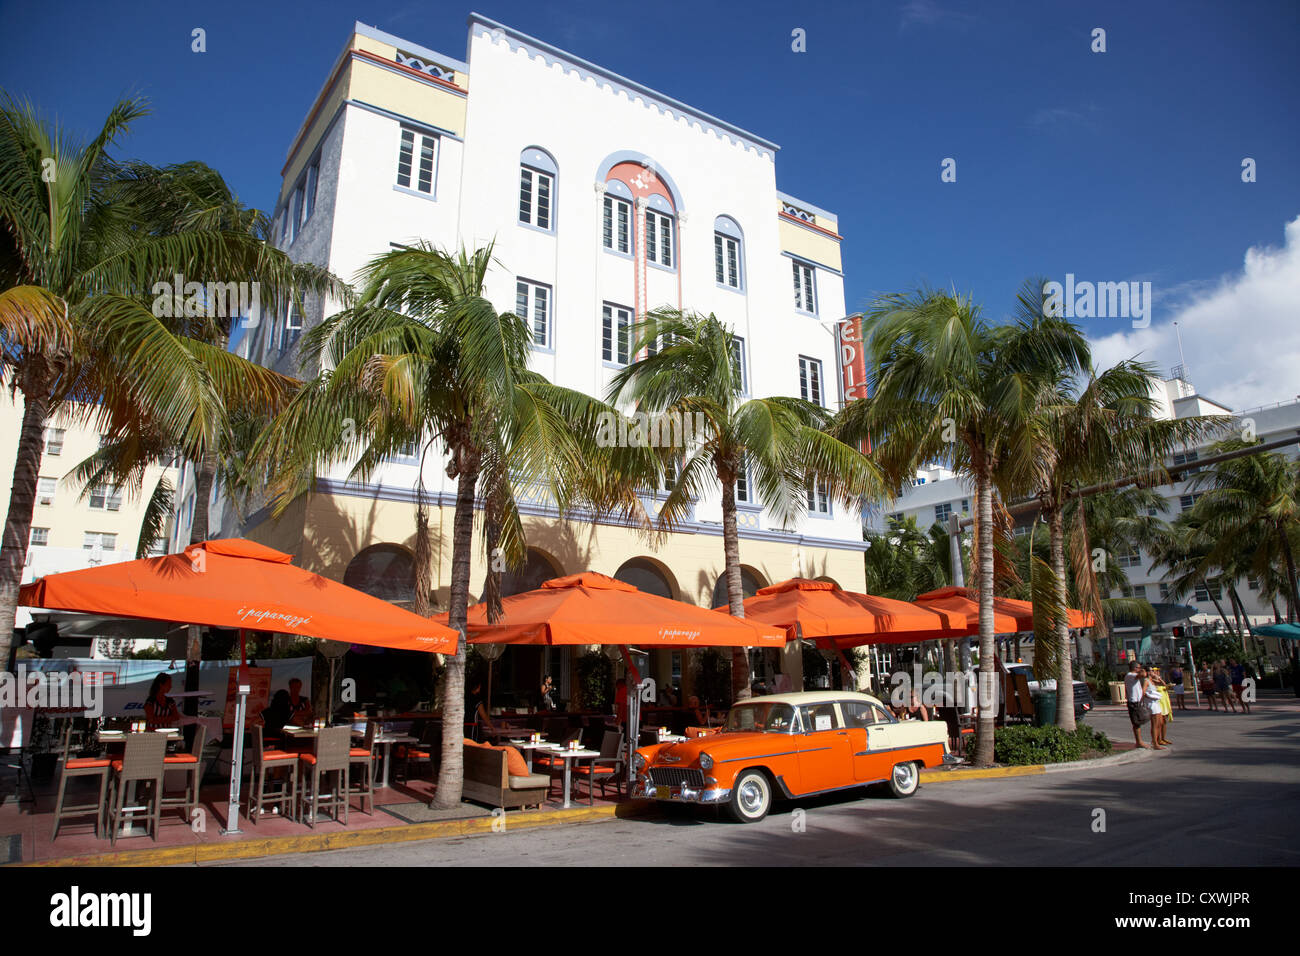 Orange Chevrolet Bel Air im kubanischen Stil außerhalb der Edison Hotel Ocean drive im Art-Deco-Viertel von Miami South beach Stockfoto